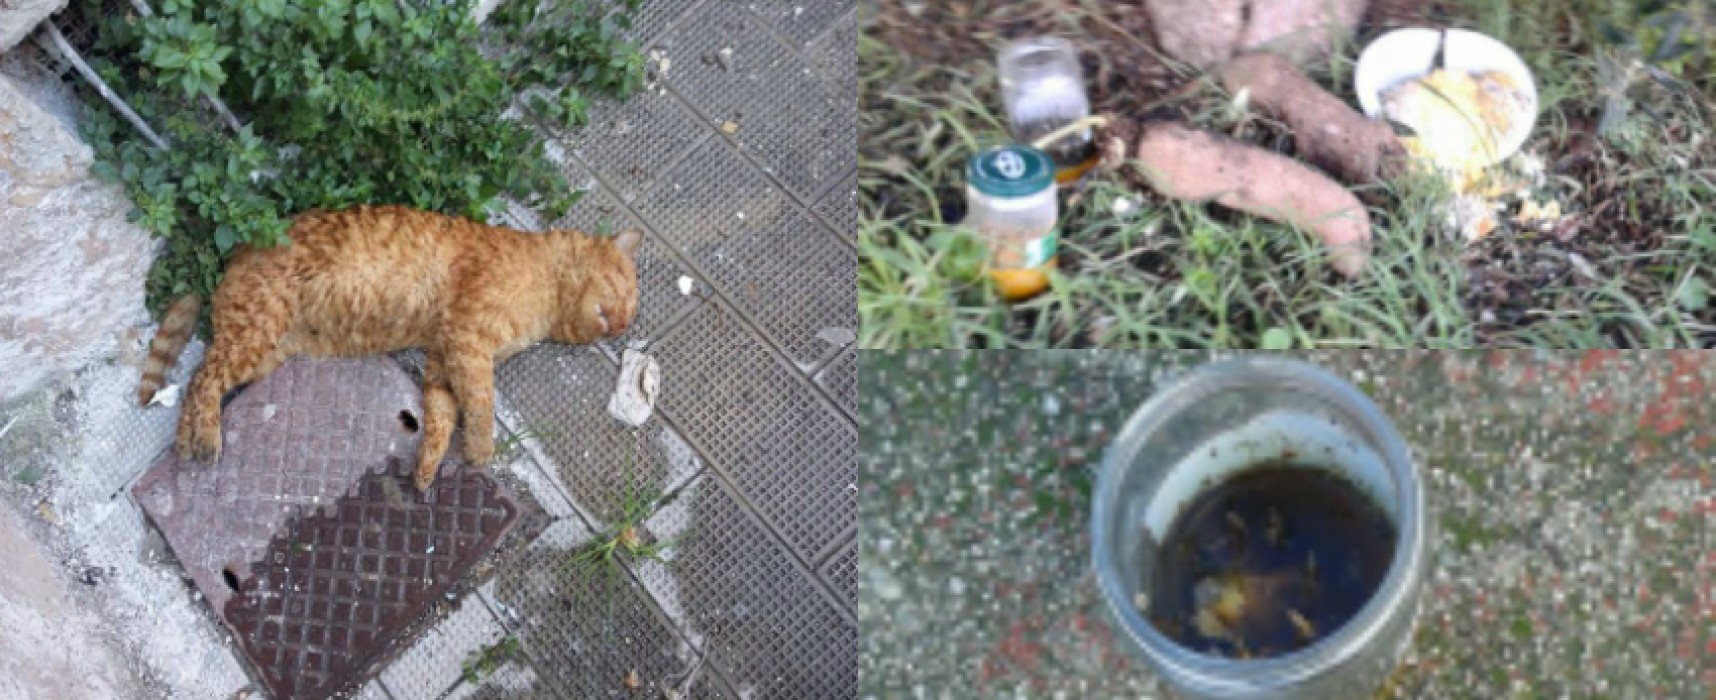 Esche avvelenate uccidono diversi gatti, la denuncia dell’associazione “I Figli di nessuno”